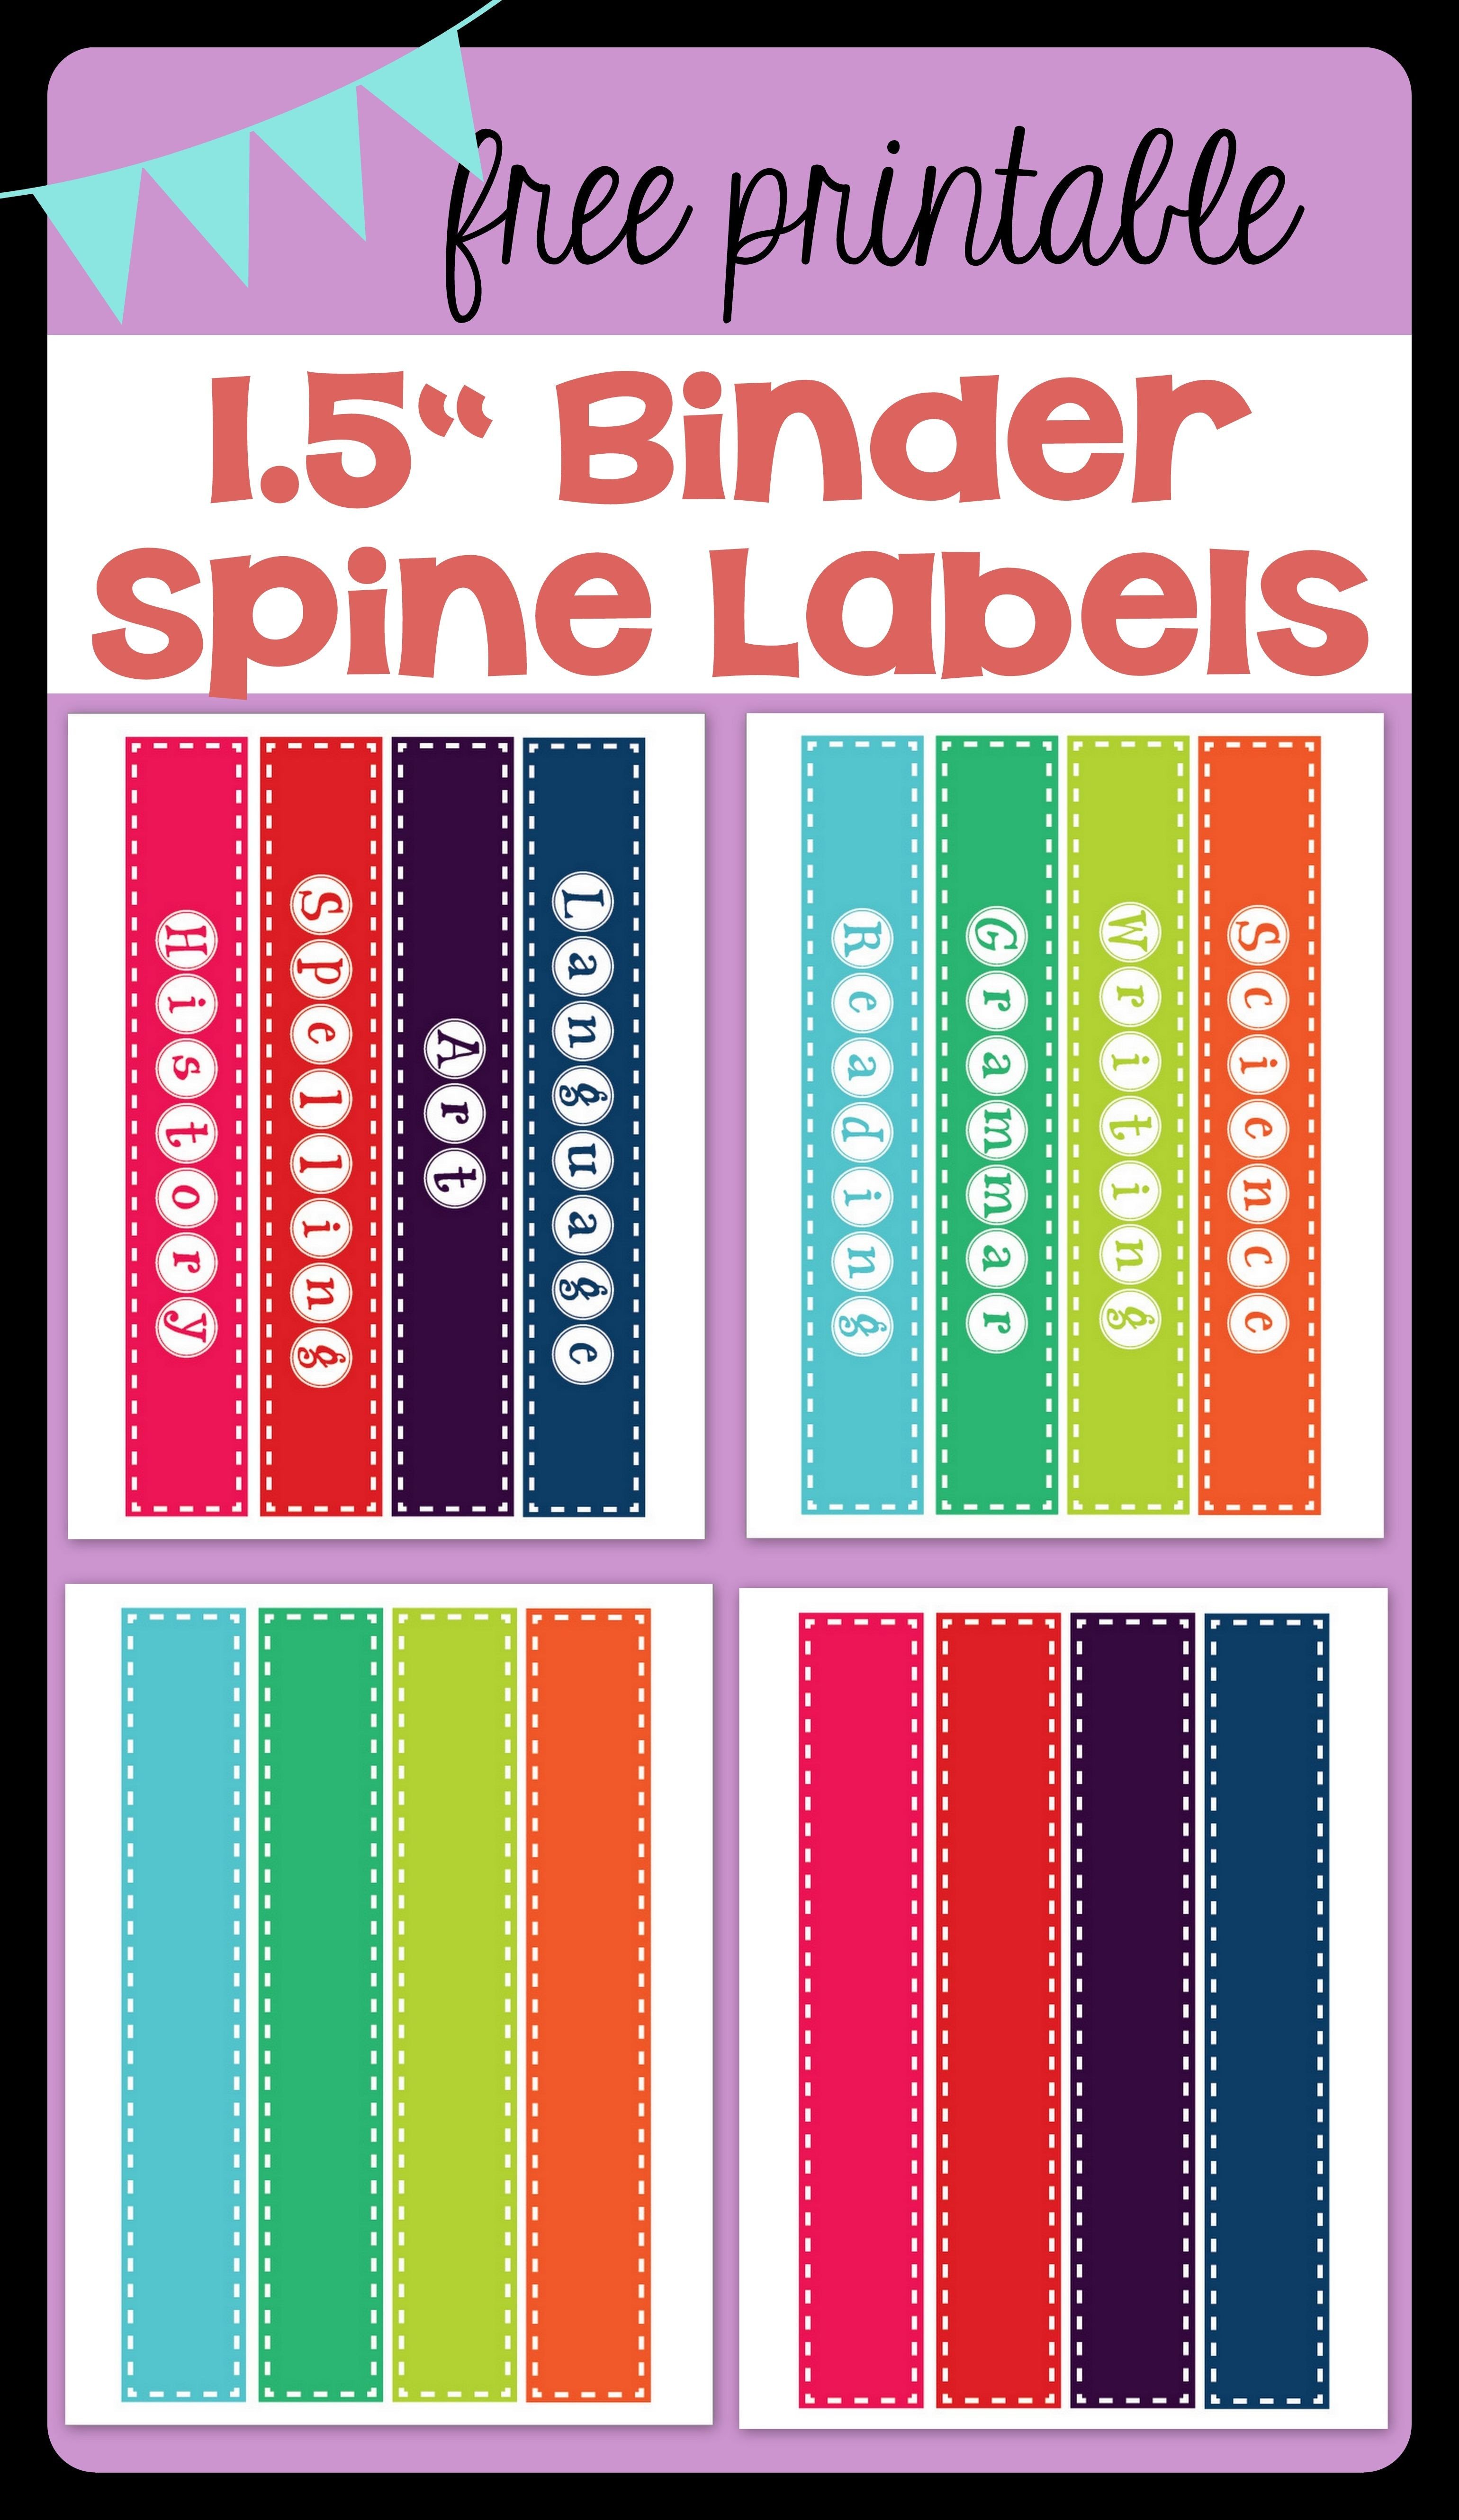 FREE PRINTABLE 1 5" Binder Spine Labels for basic school